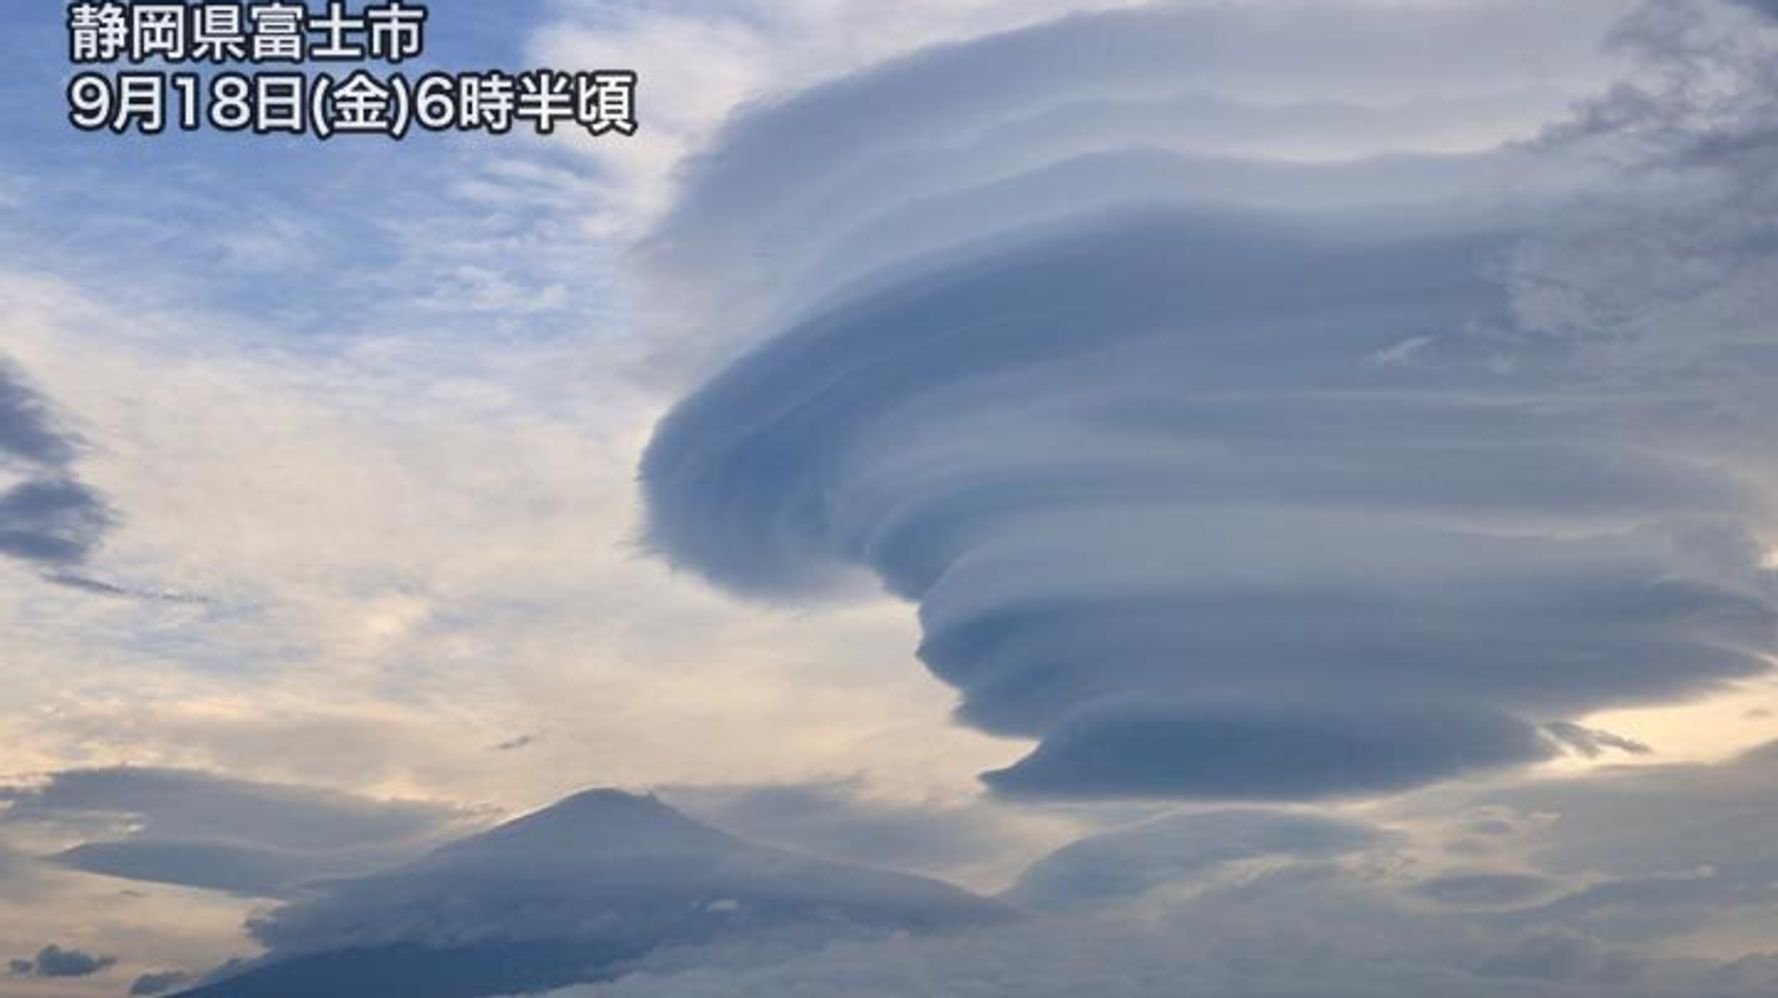 富士山にラピュタが出現 大きな雲の正体は ハフポスト